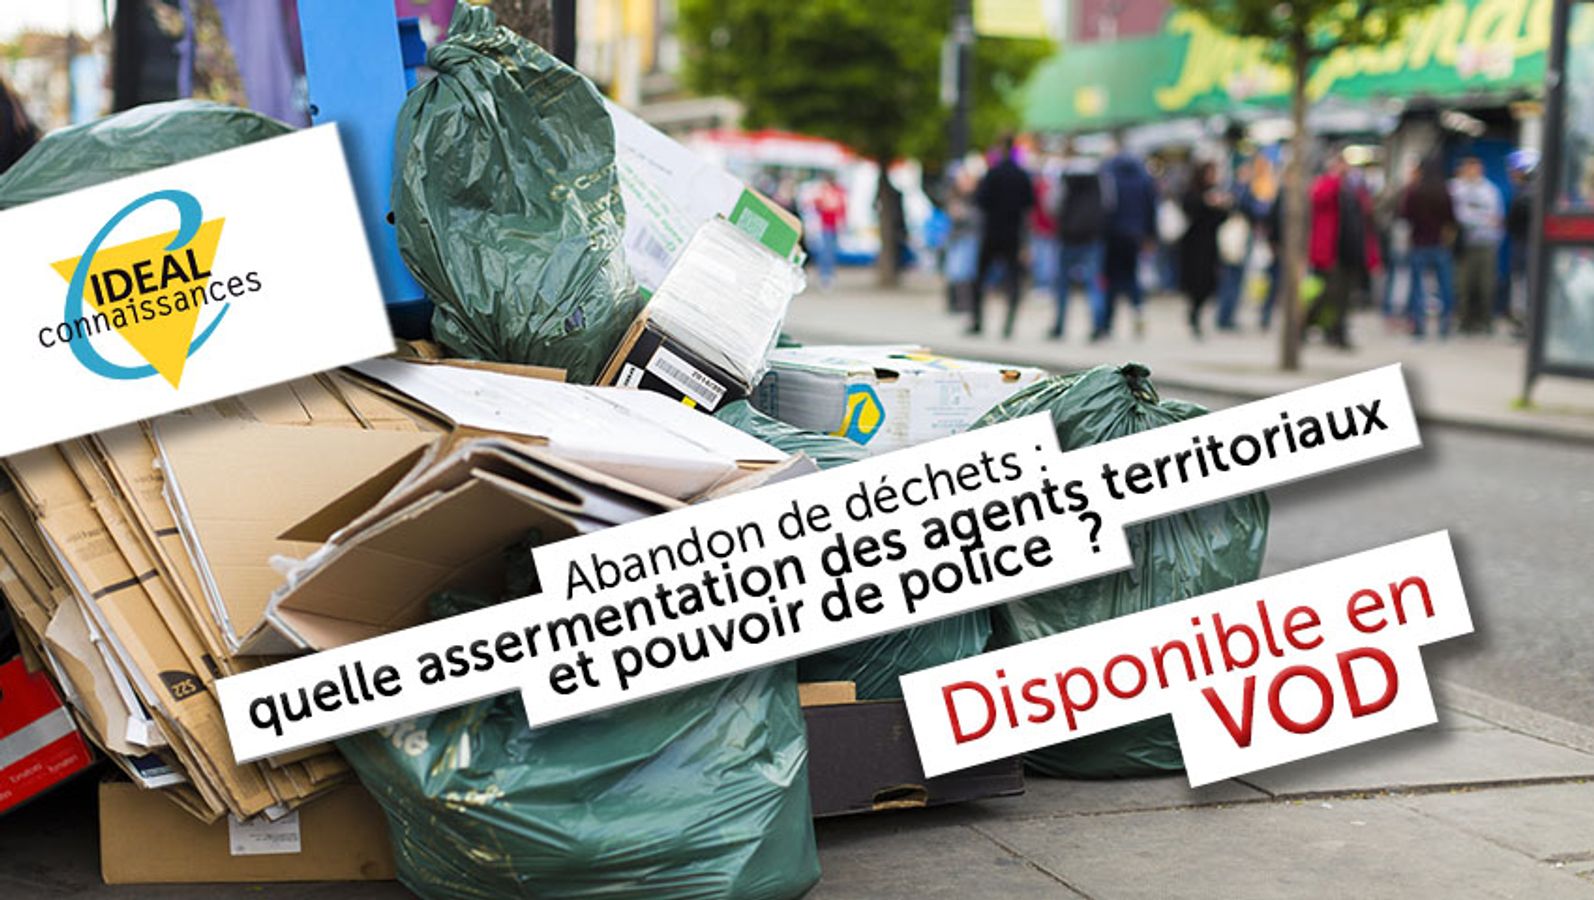 Abandon de déchets : quelle assermentation des agents territoriaux et pouvoir de police ?